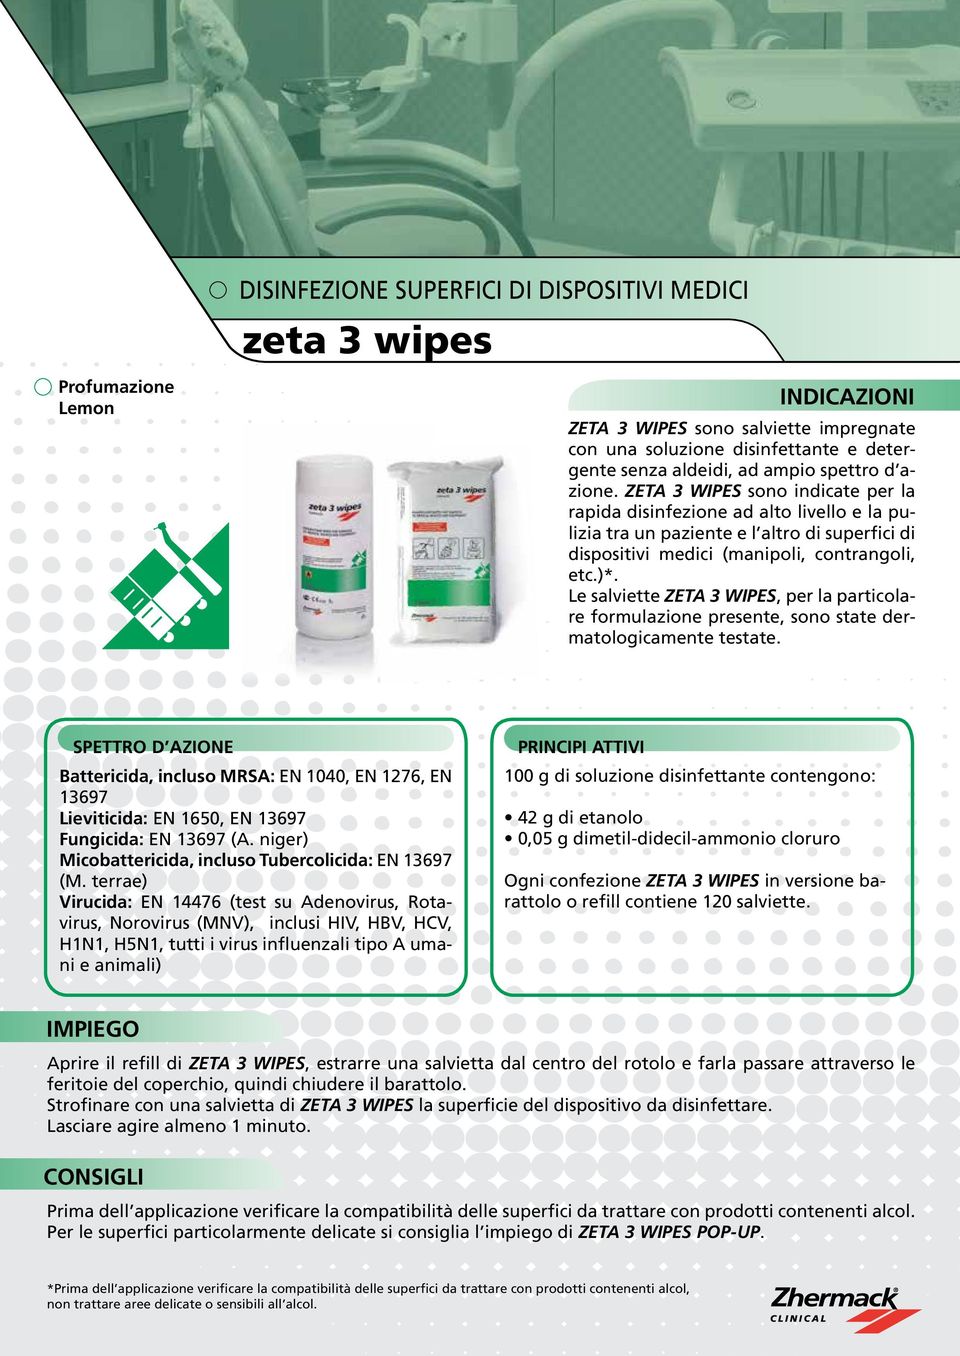 Le salviette ZETA 3 WIPES, per la particolare formulazione presente, sono state dermatologicamente testate.